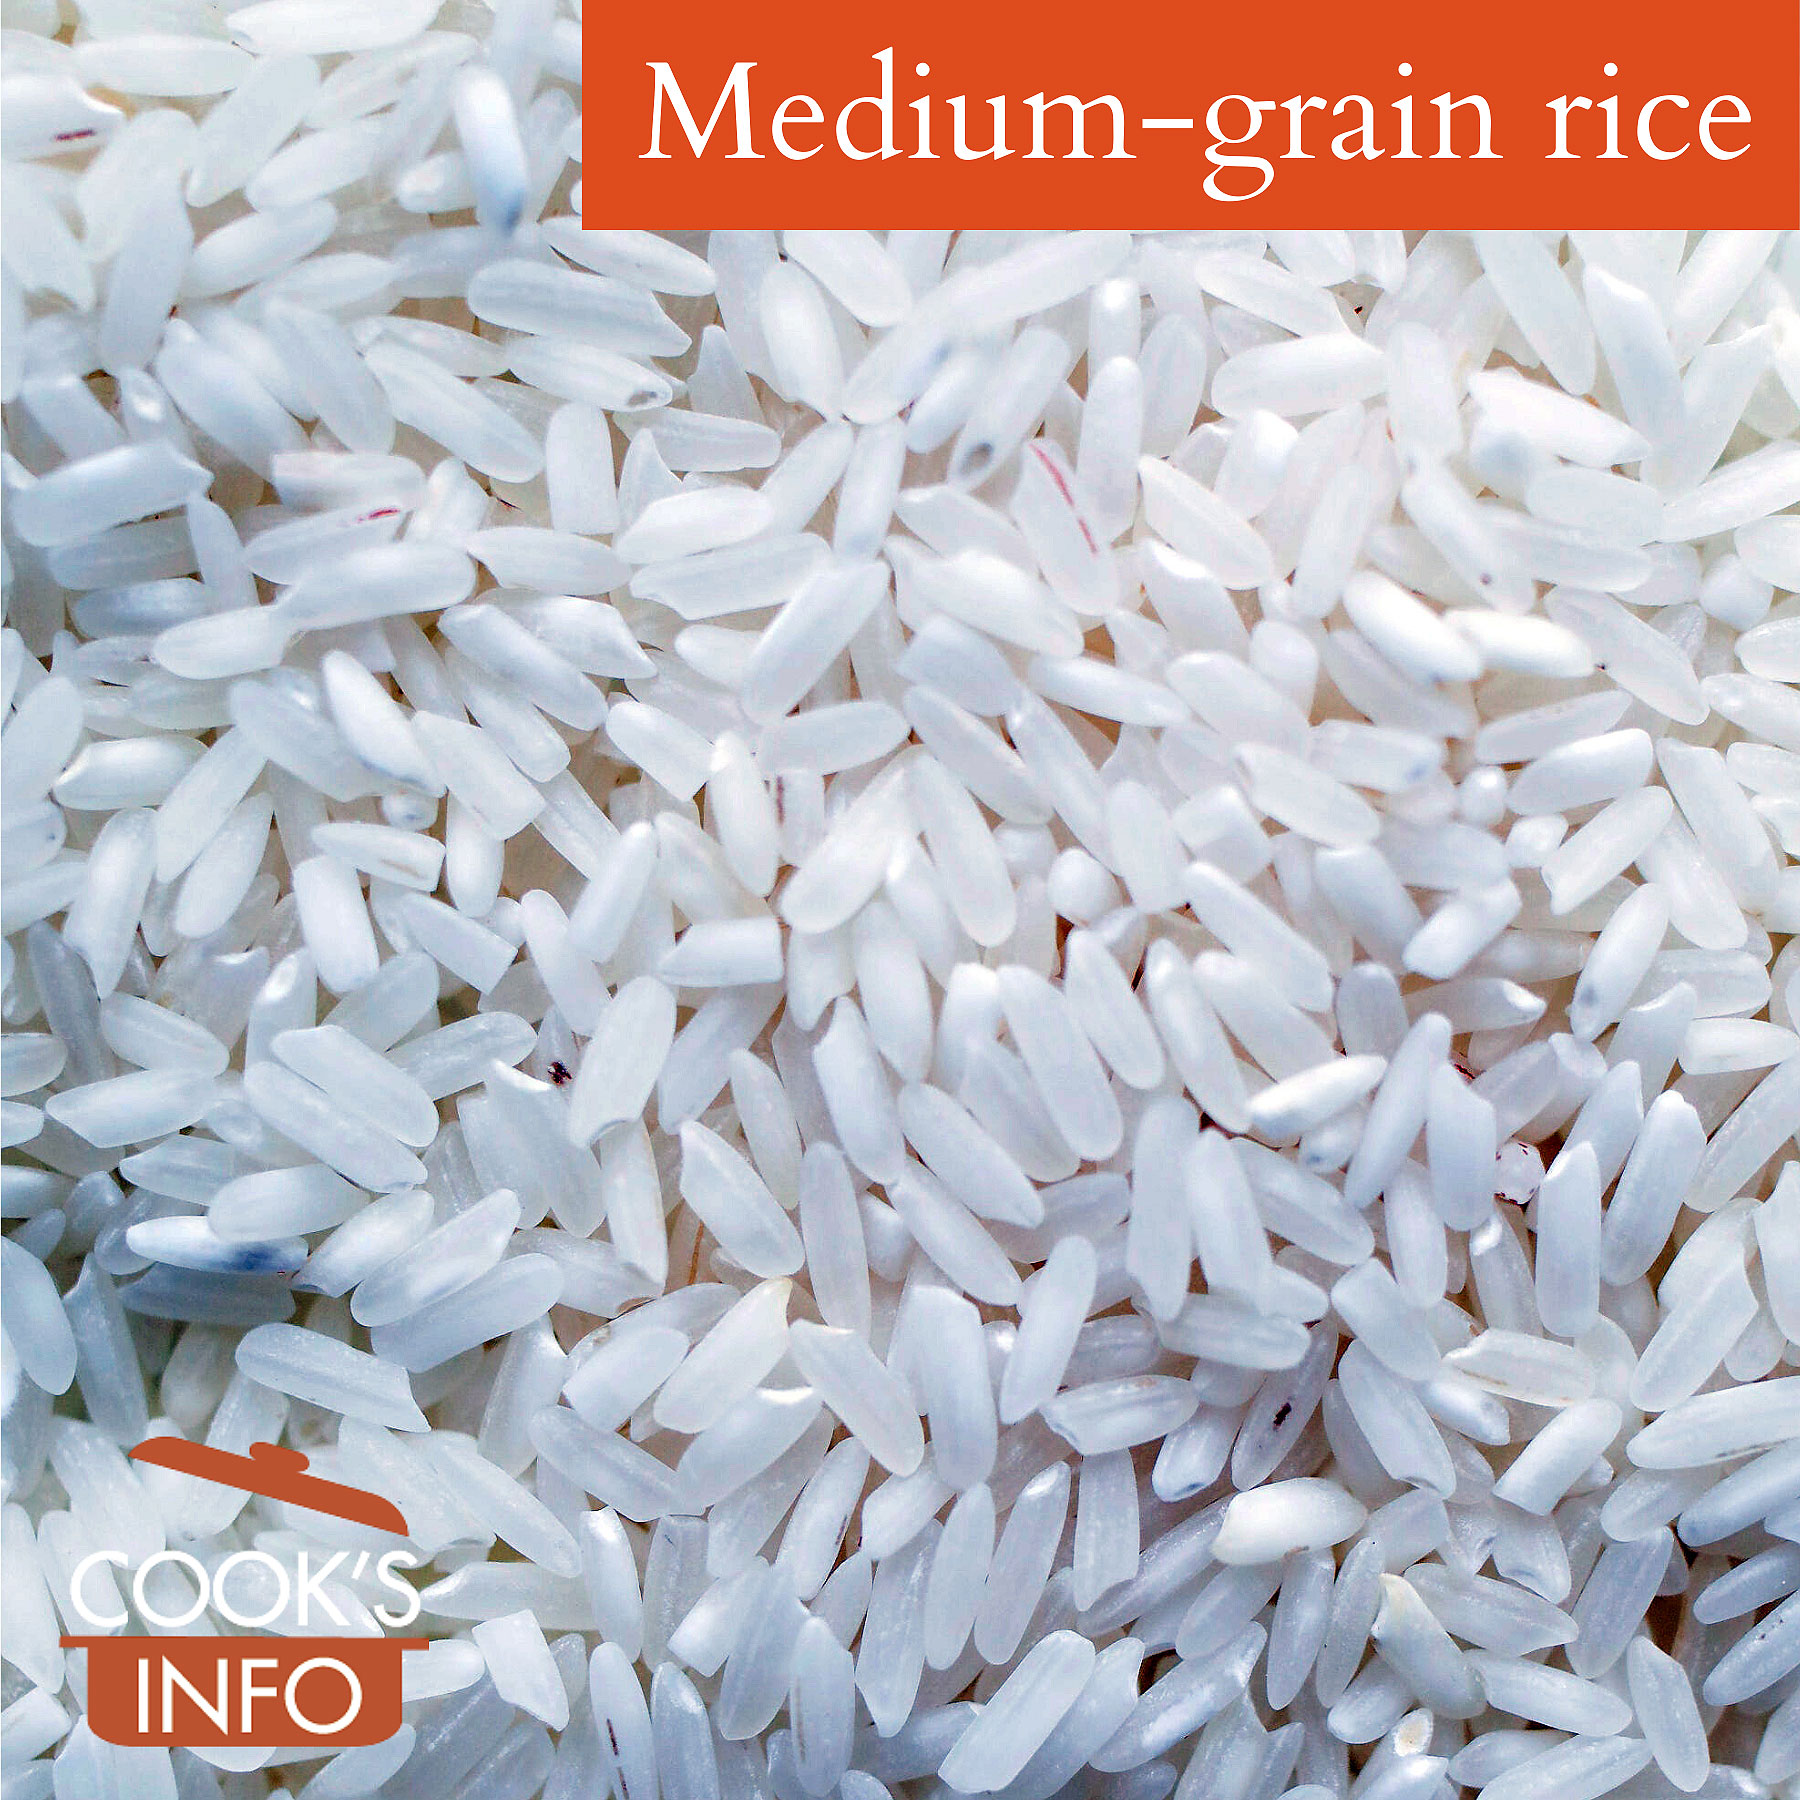 Medium-grain rice